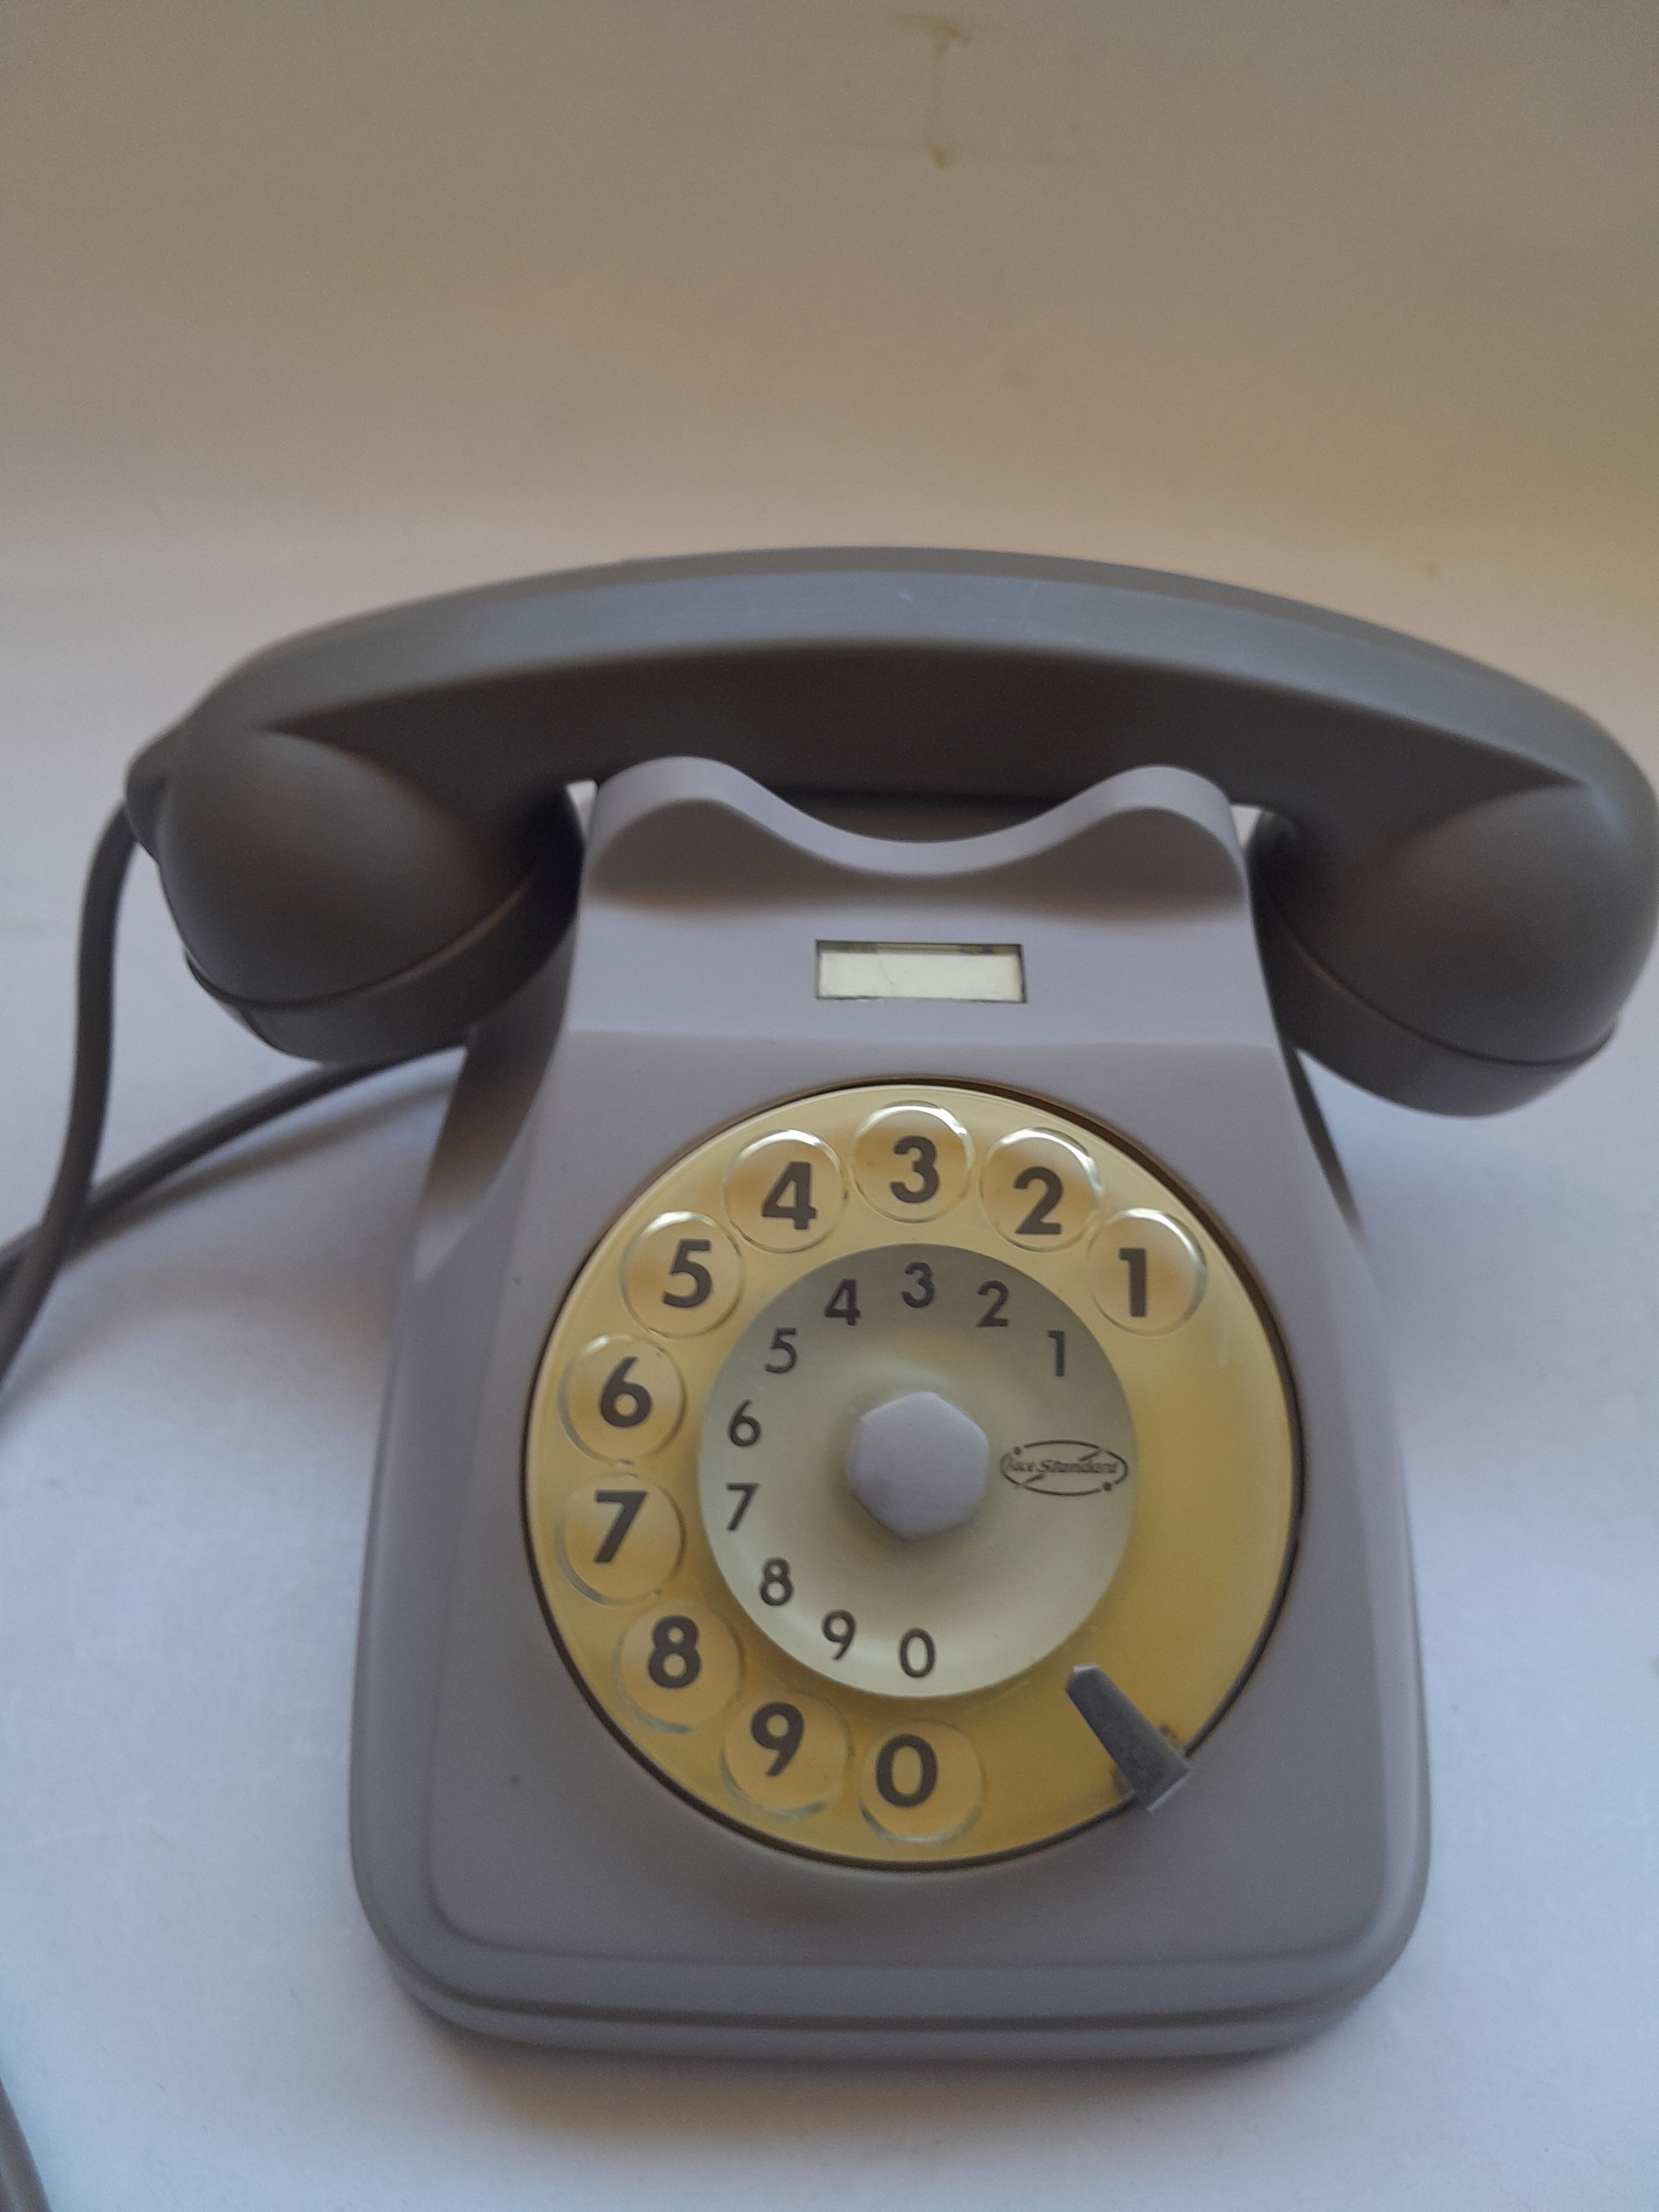 El Kram Le Kram Est Autre Autre Ancien telephone a roulette original des annees 70